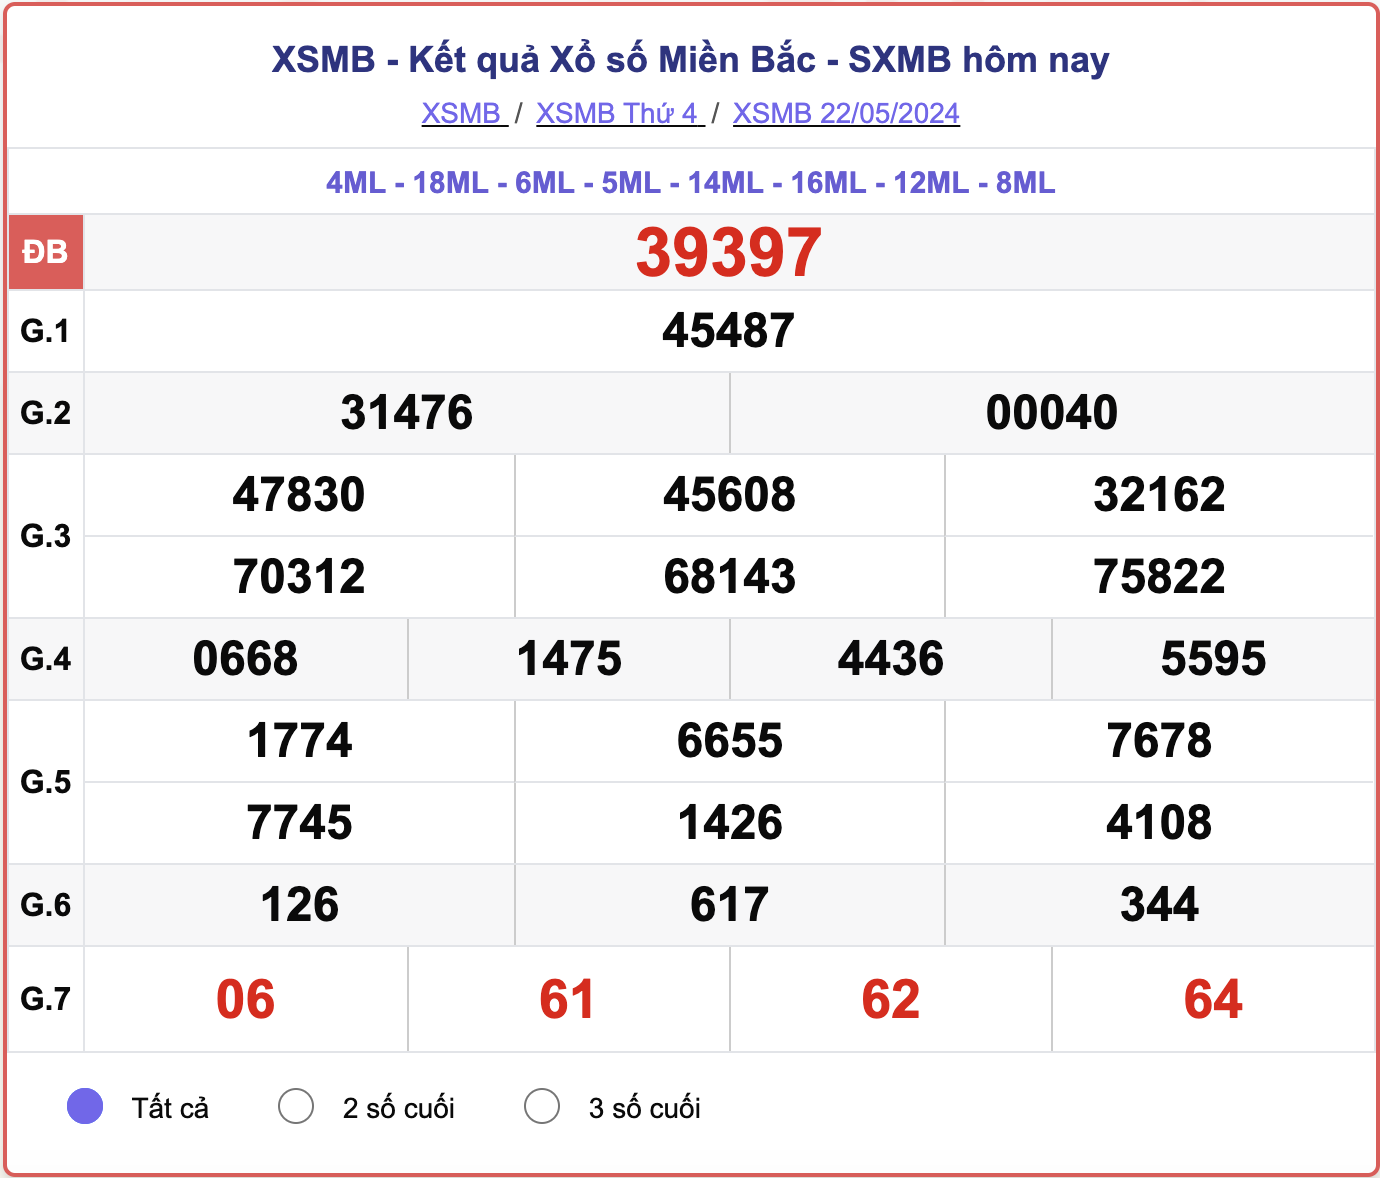 XSMB 25/5 - Kết quả xổ số miền Bắc hôm nay 25/5/2024 - KQXSMB ngày 25/5- Ảnh 4.